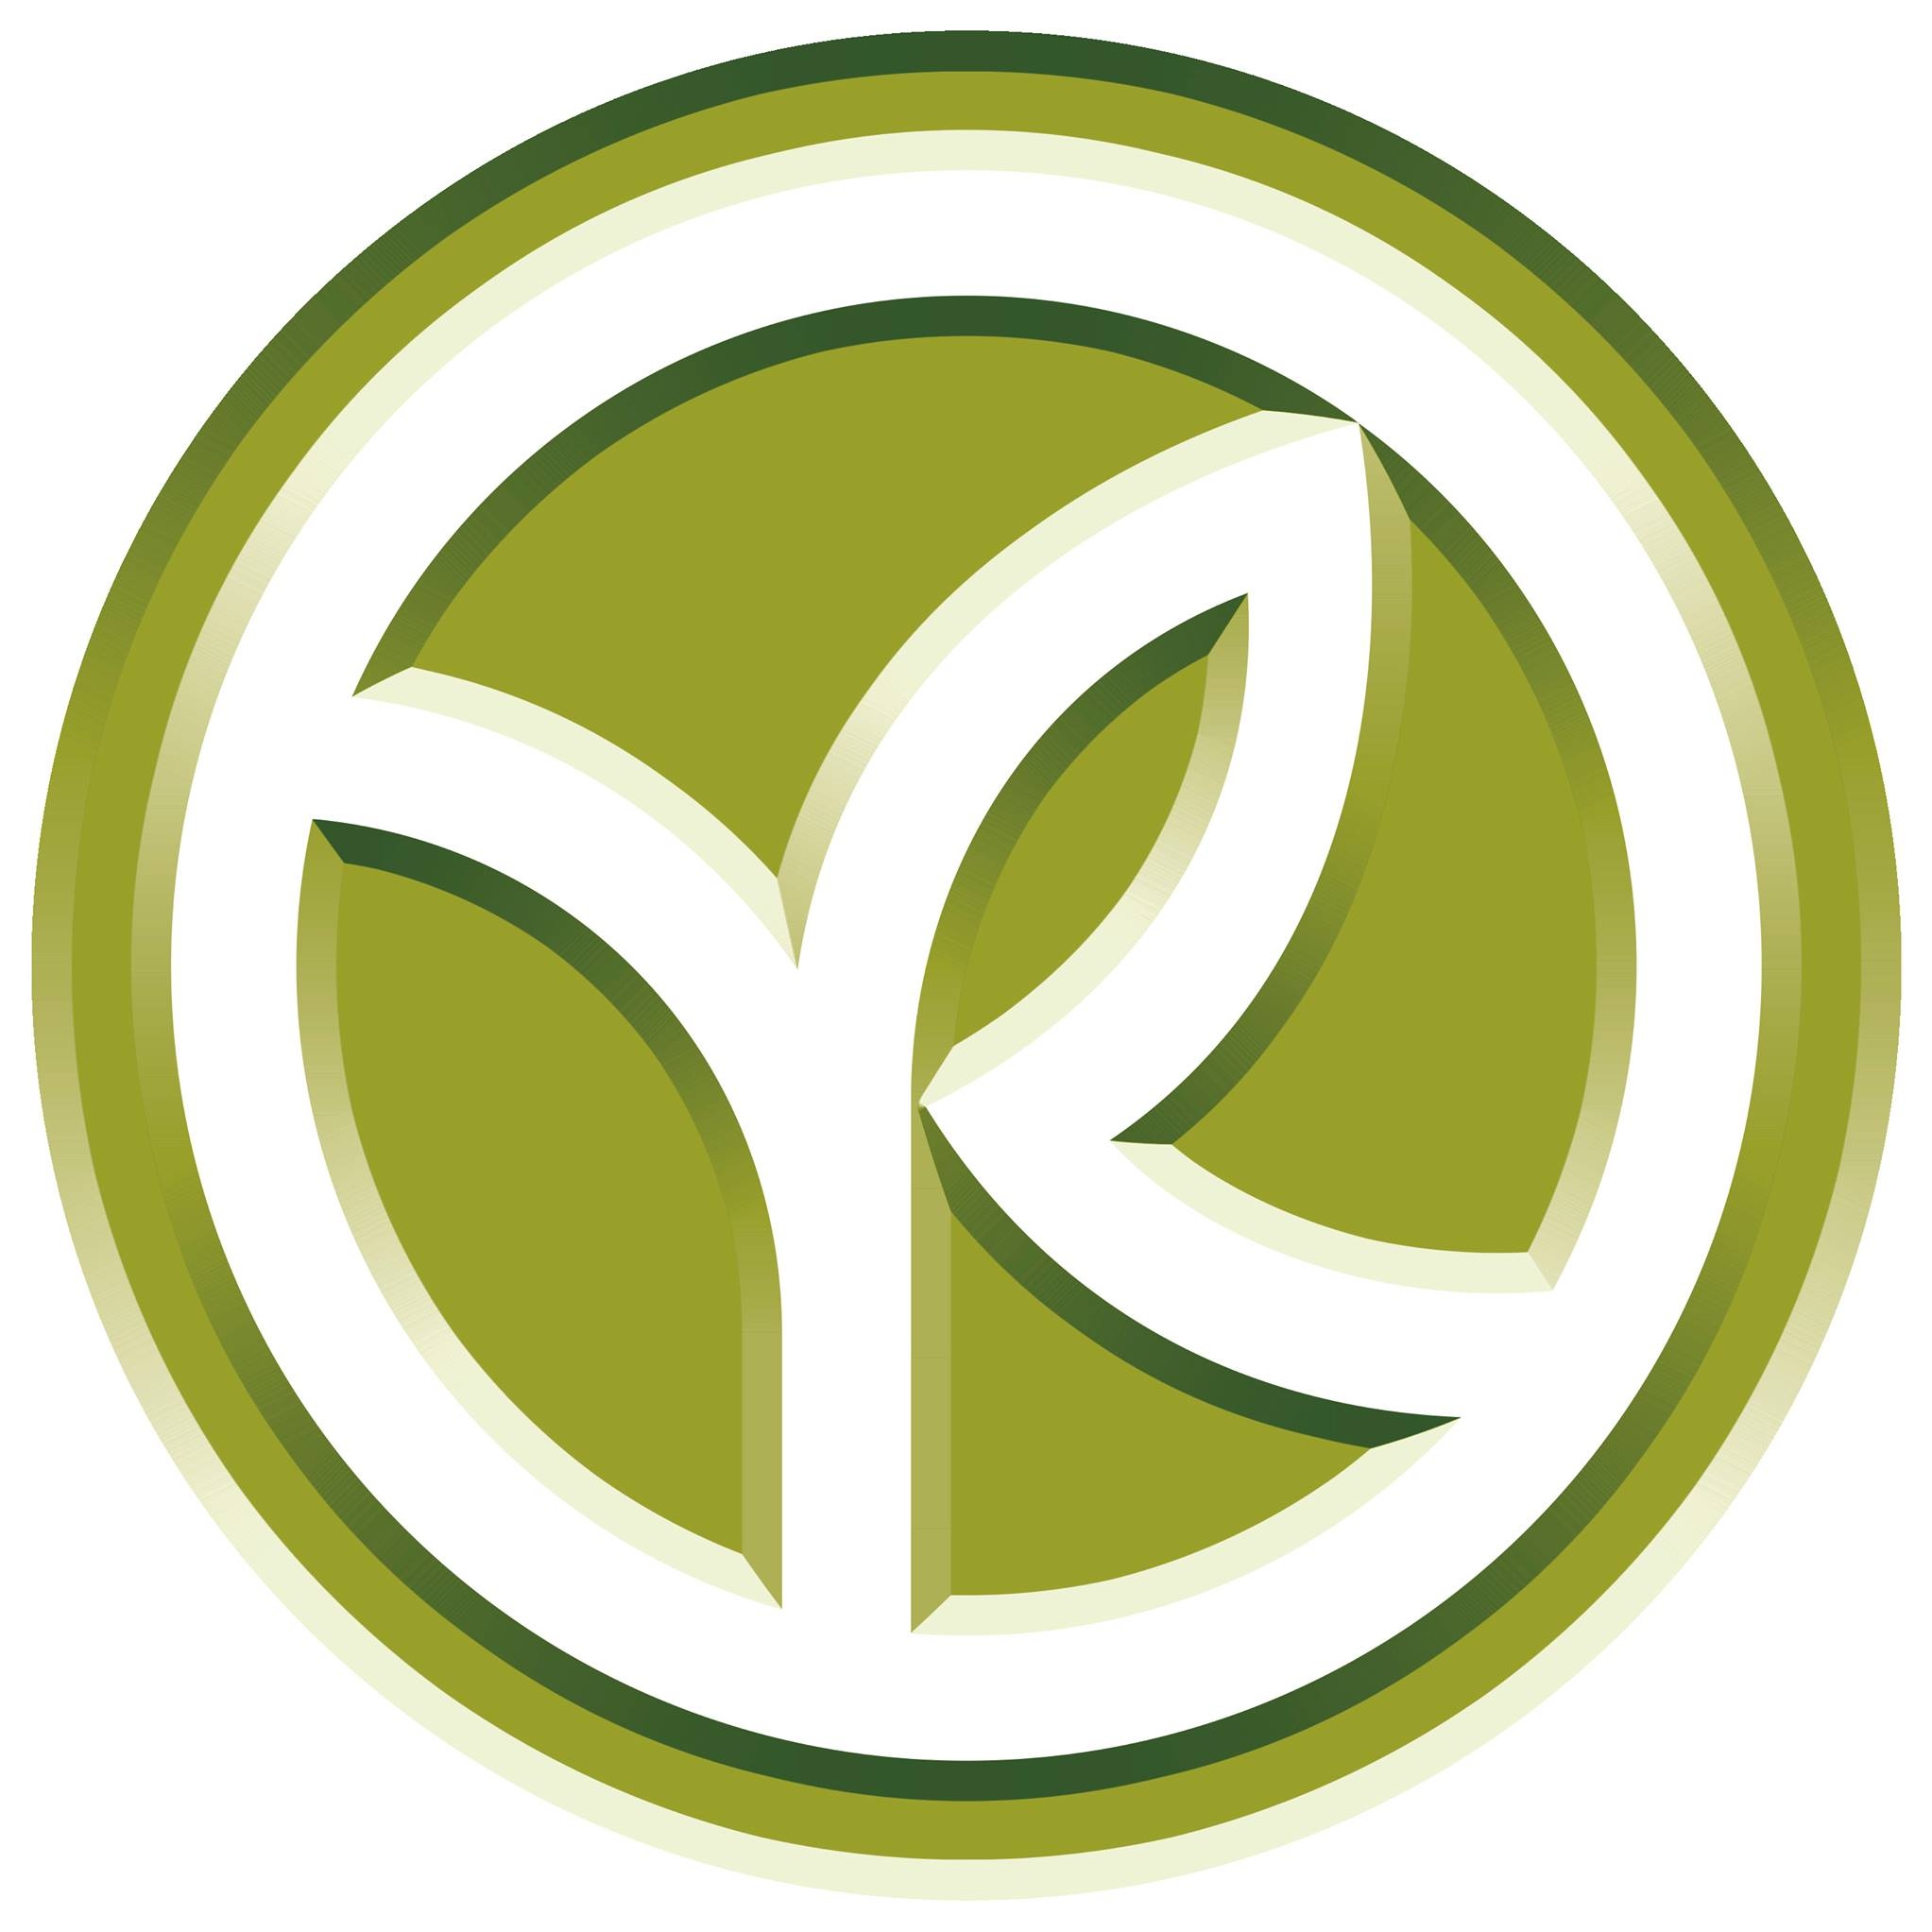 Yves Rocher - Logo